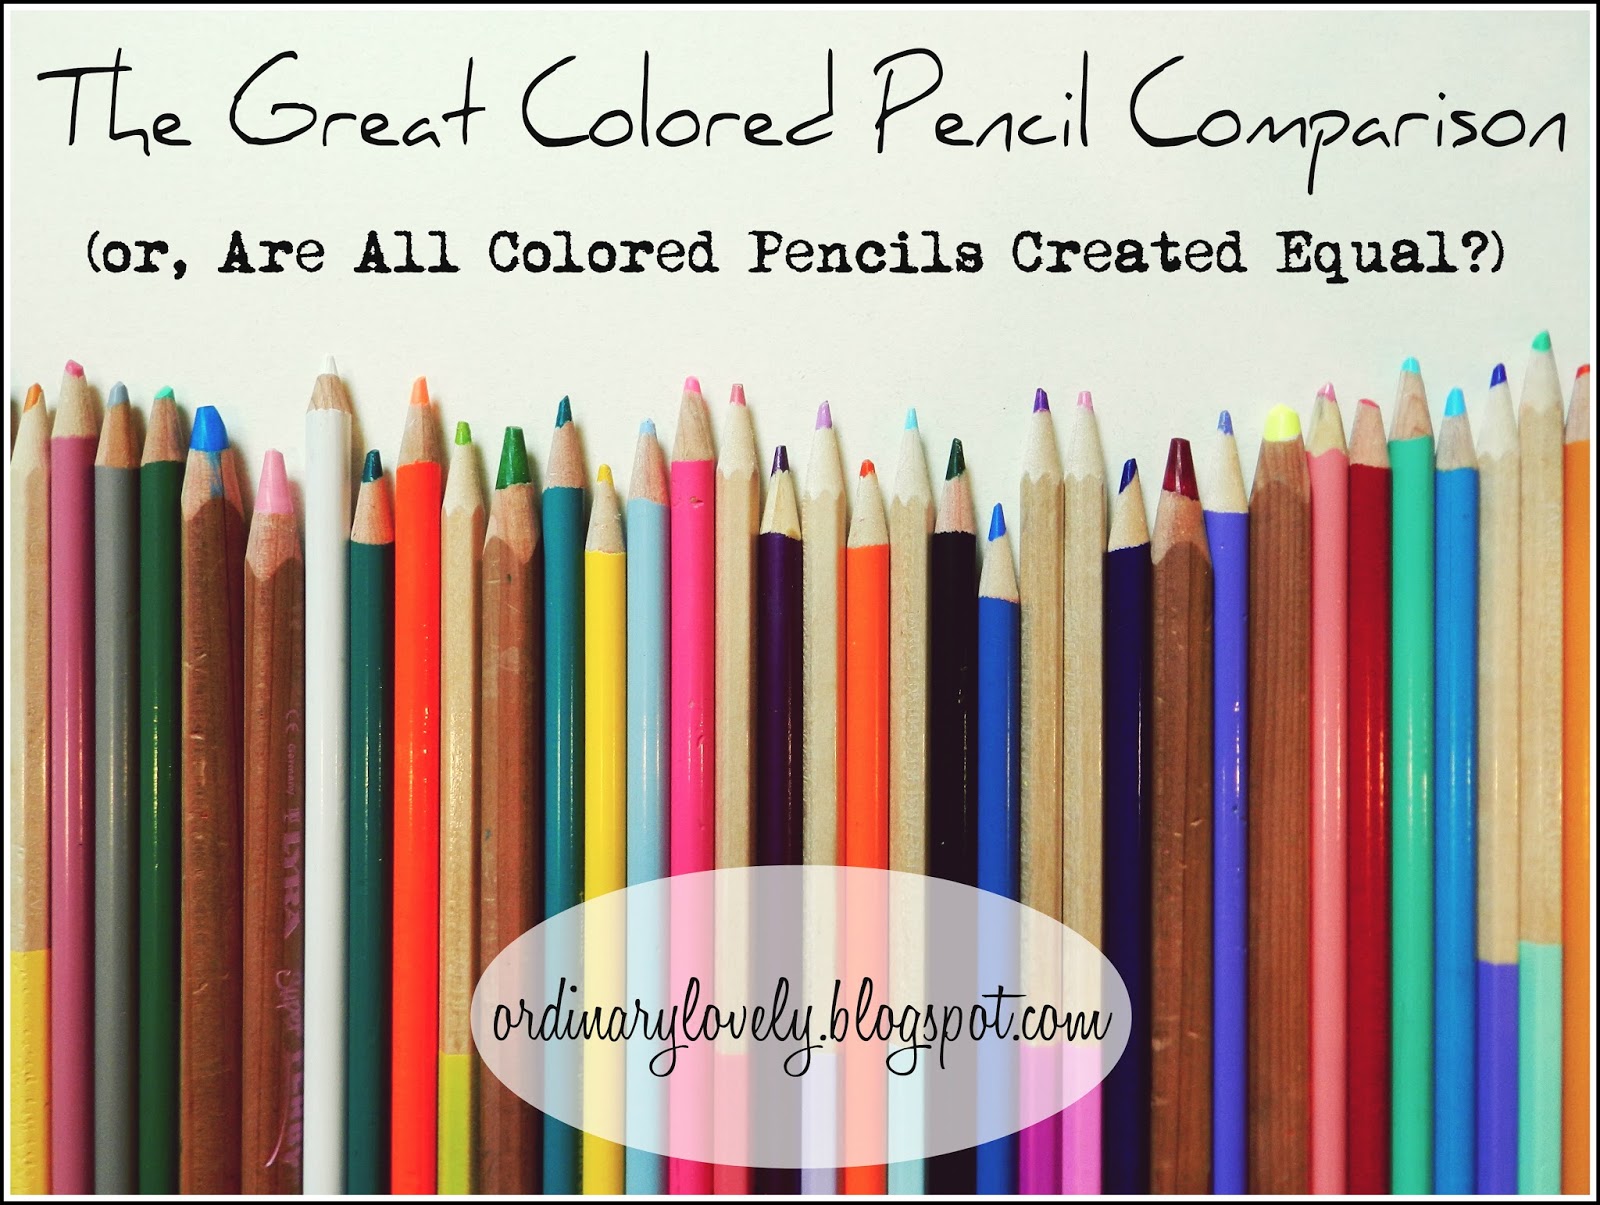 Sargent Art Colored Pencil Sets  Art pencil set, Colored pencils